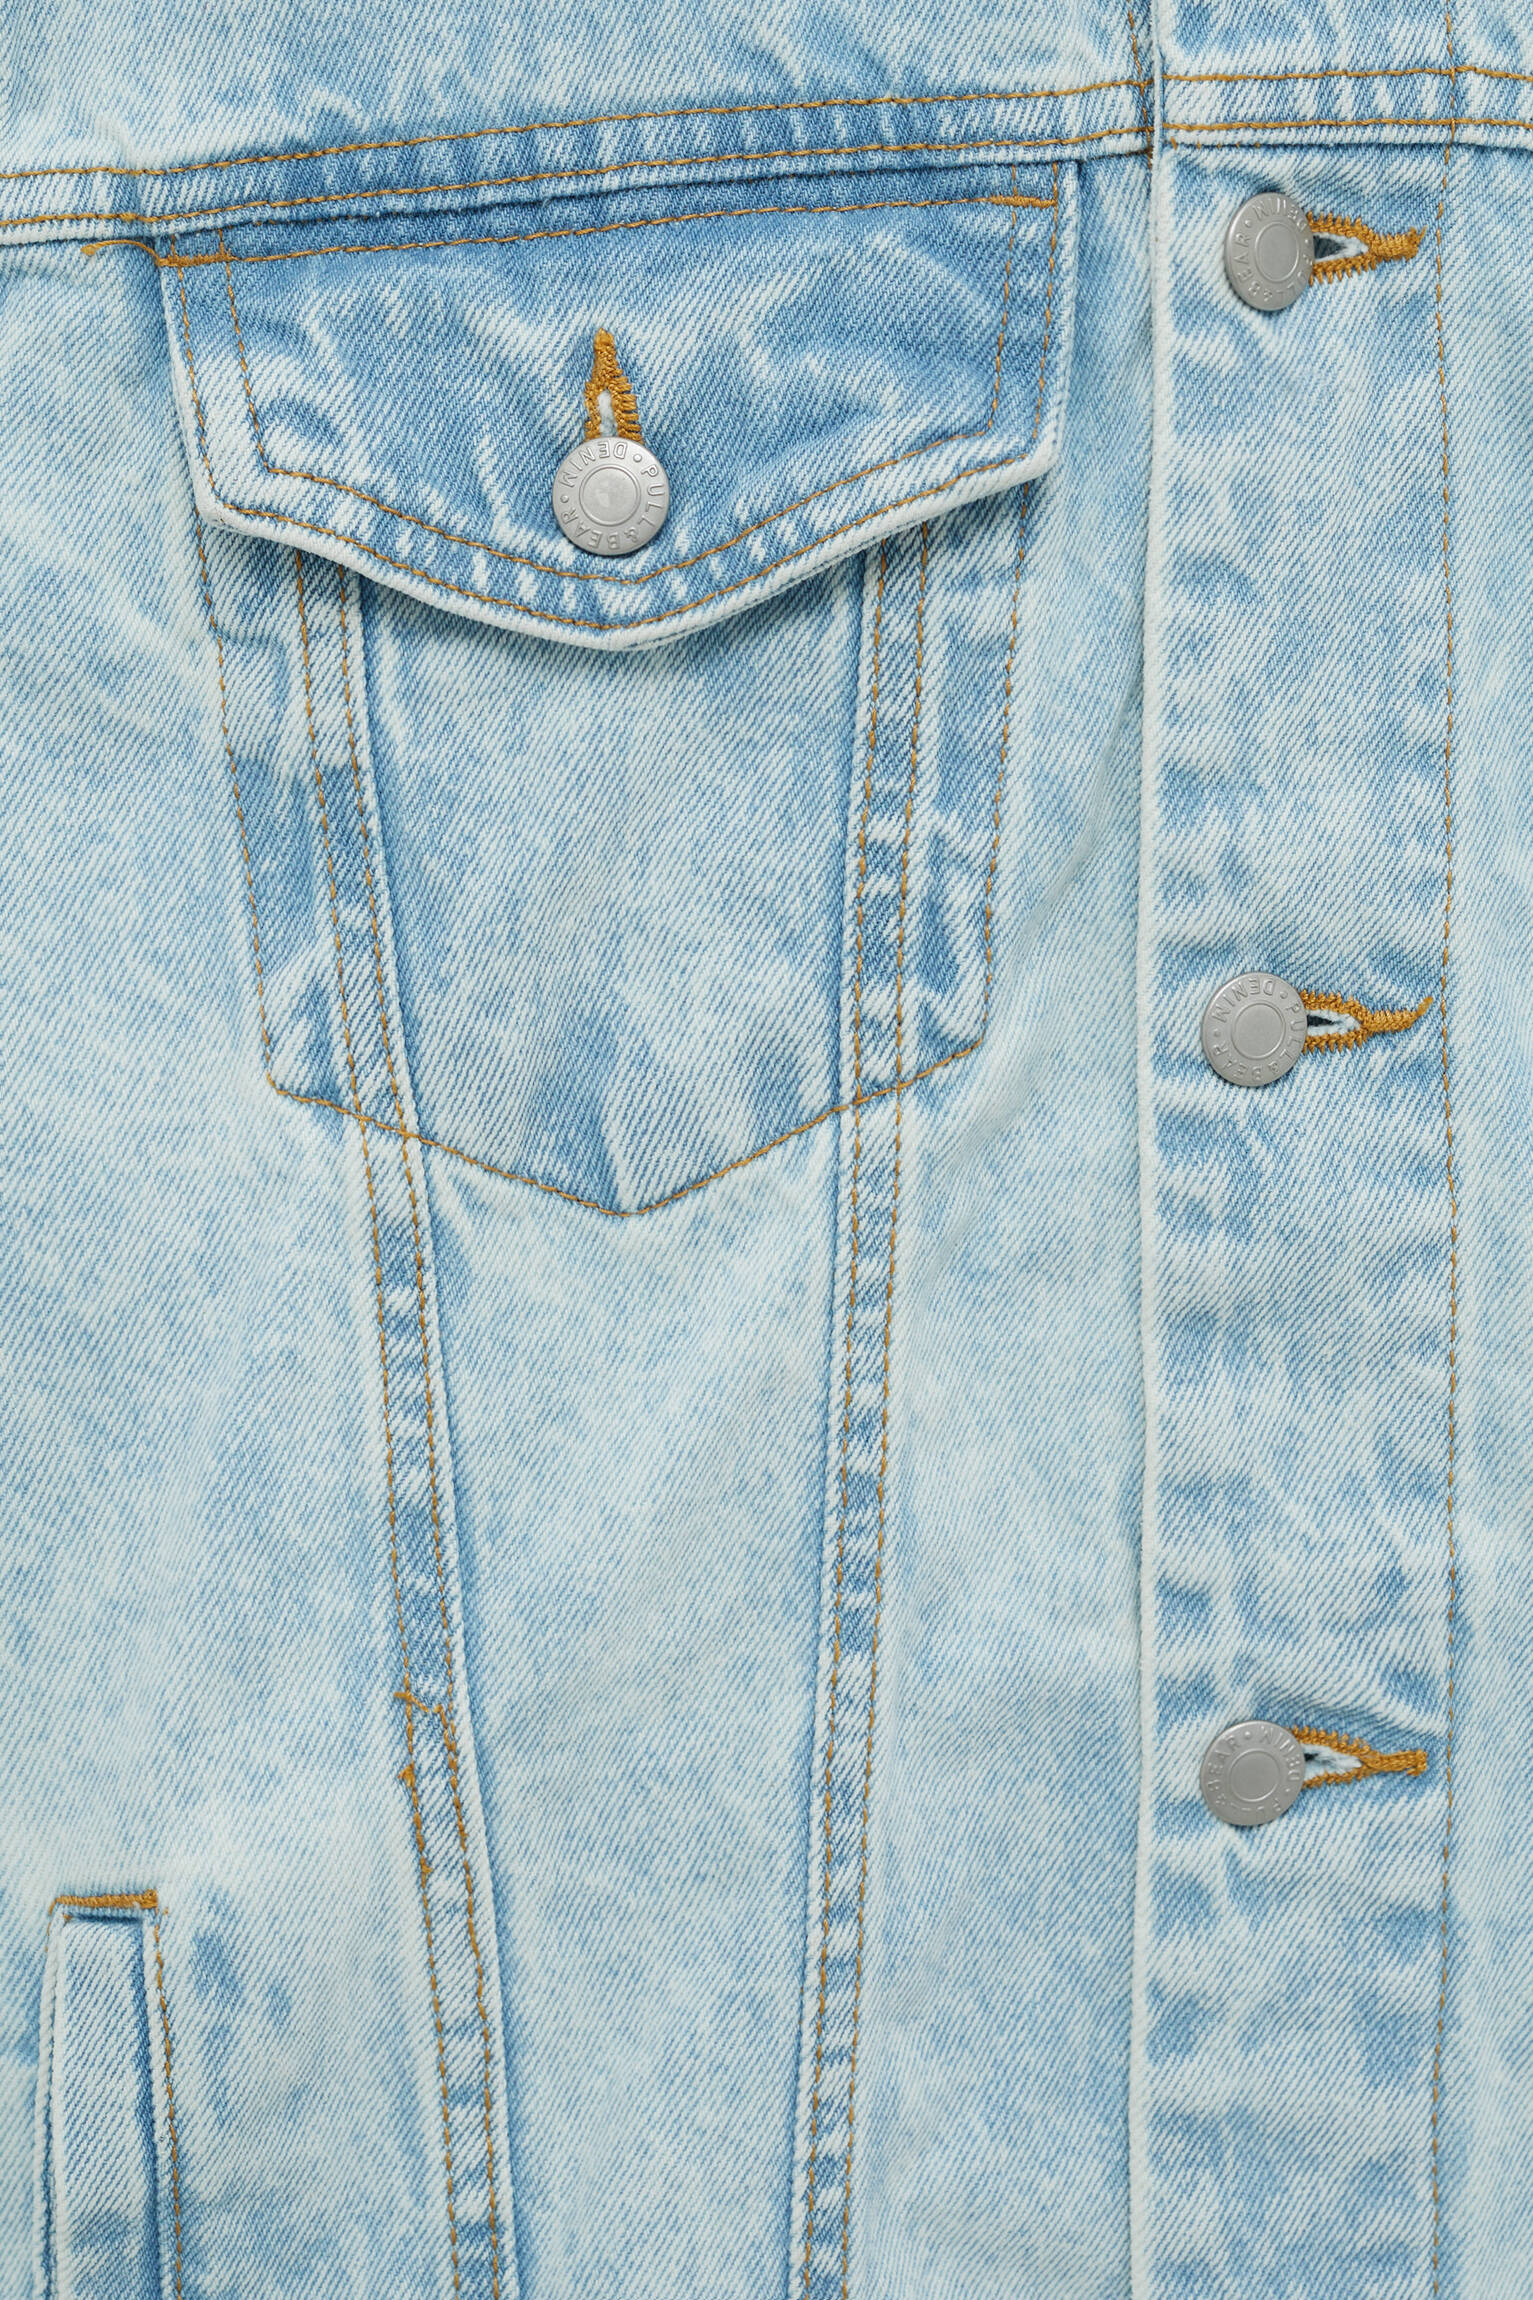 Базовая джинсовая куртка синего цвета СВЕТЛЫЙ ИНДИГО Pull & Bear